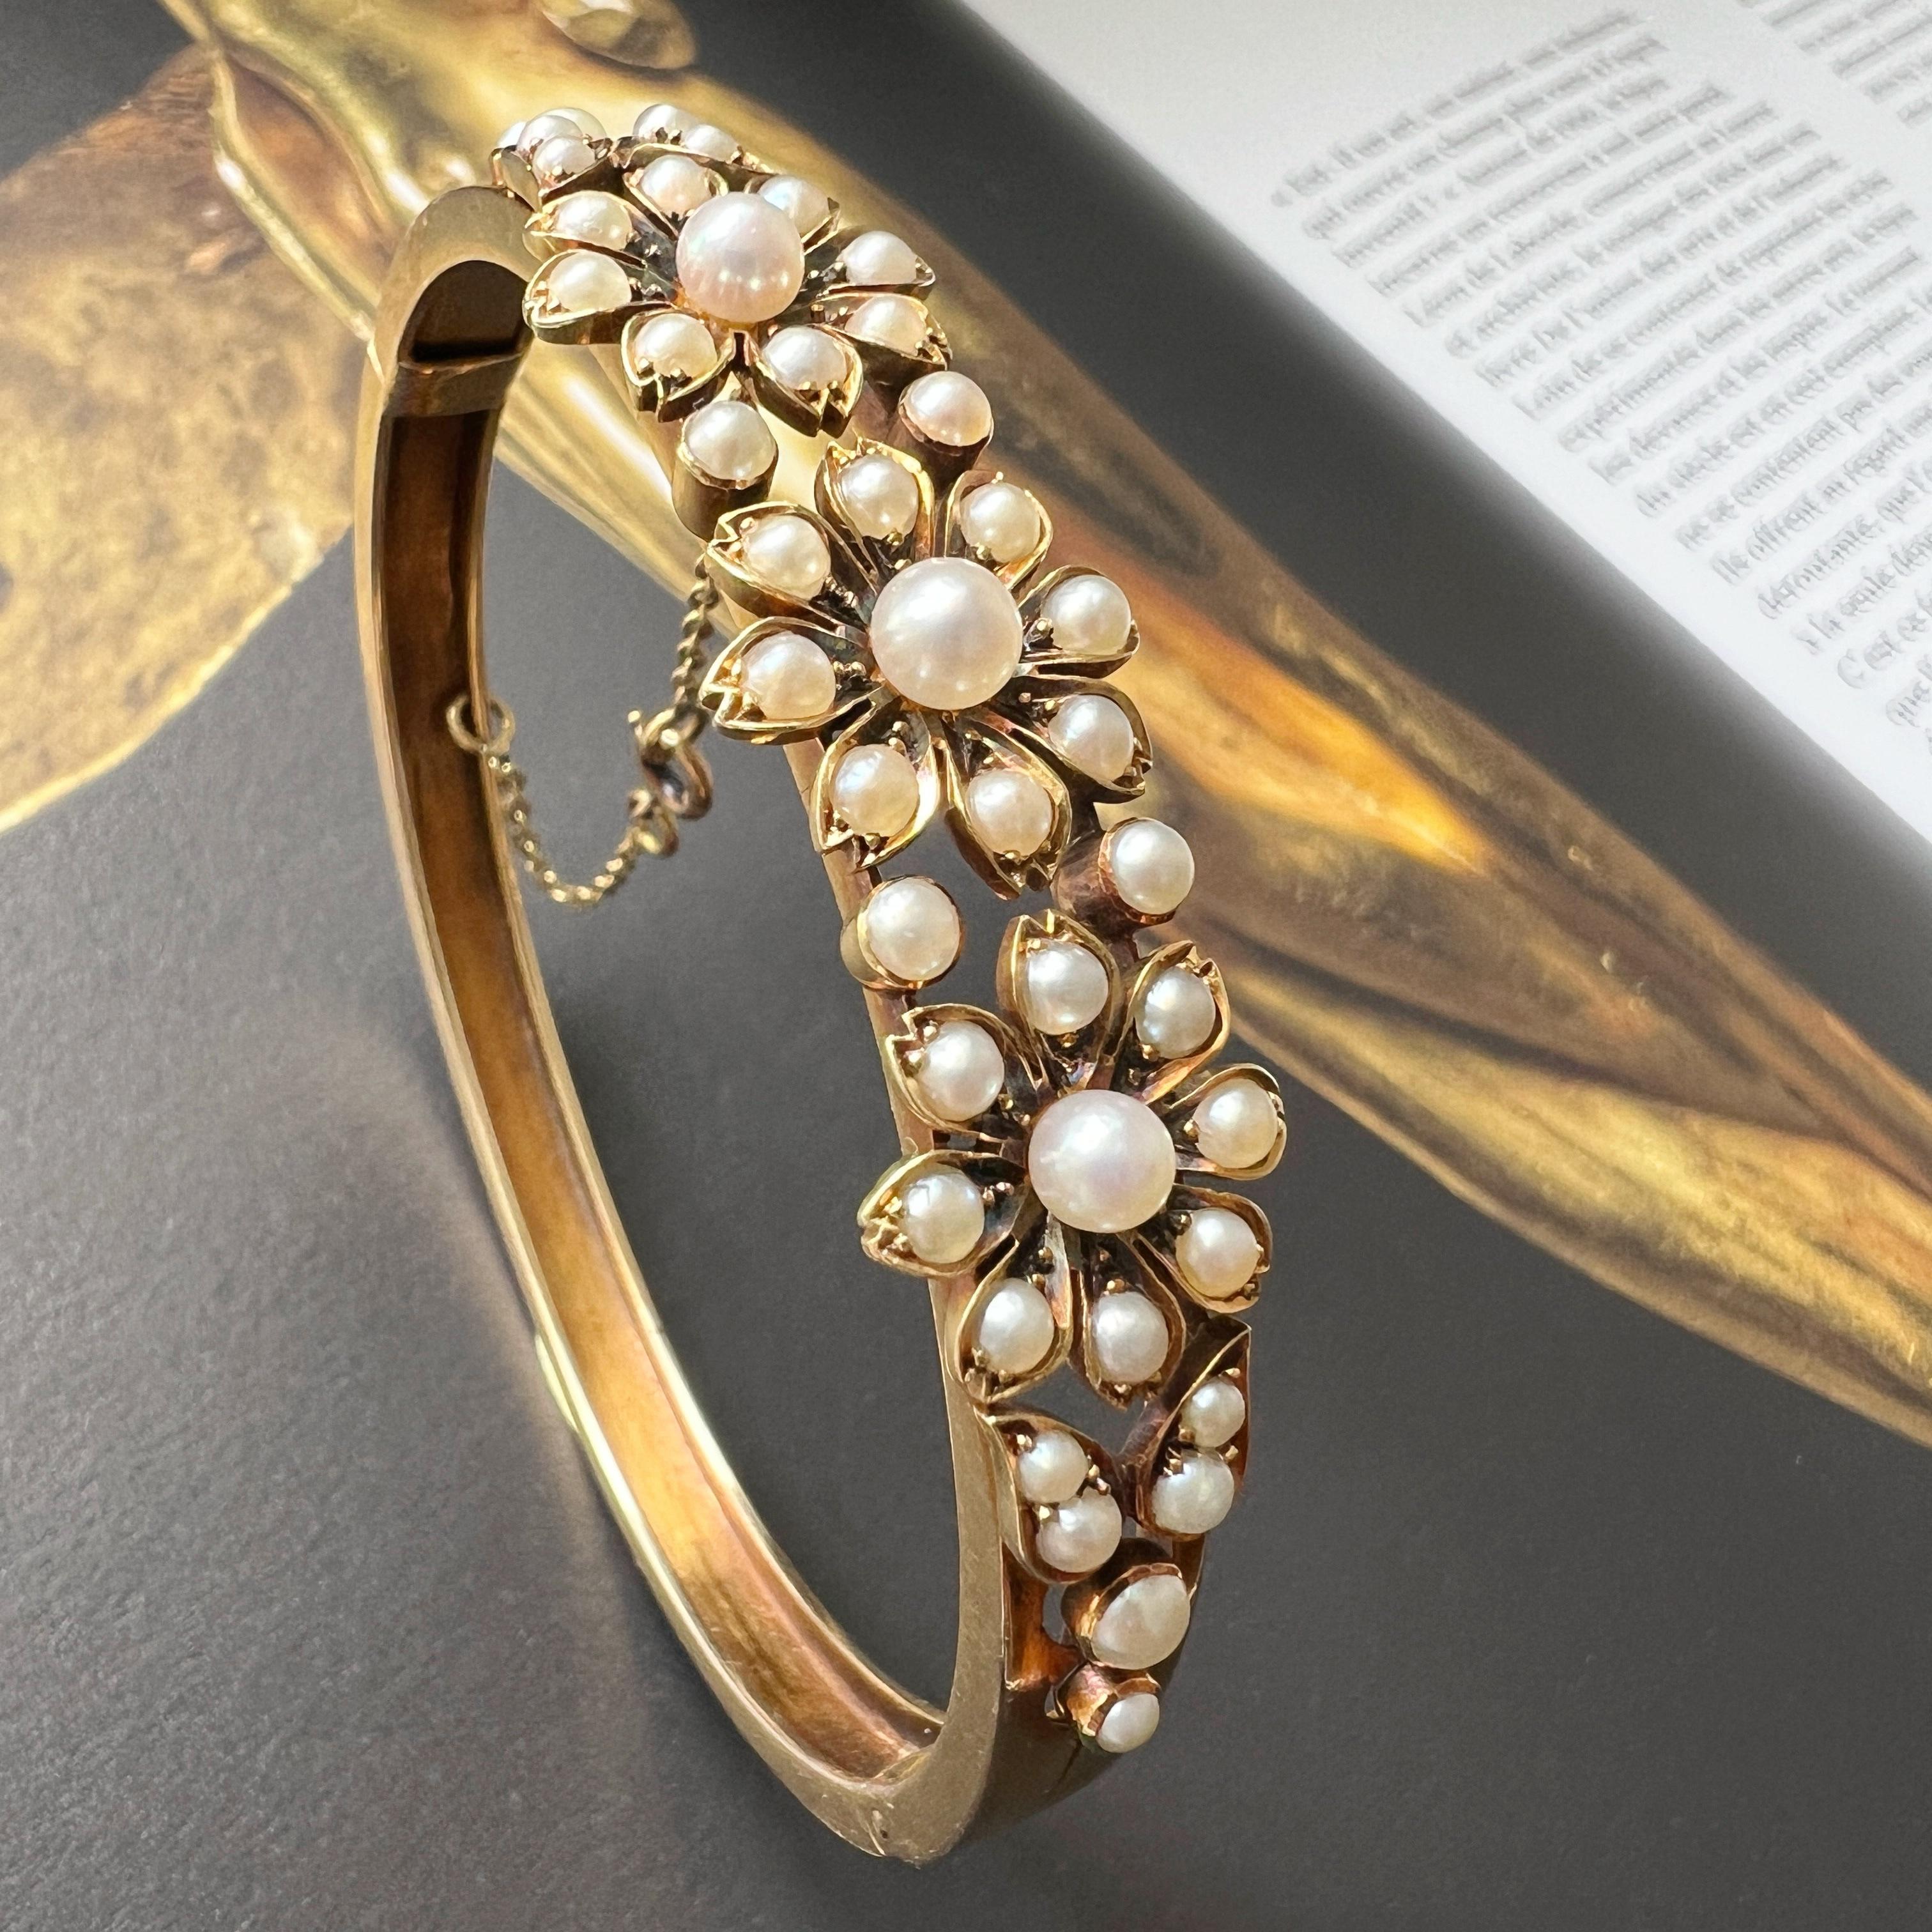 Les perles blanches ont fait un retour en force ces dernières années et sont aujourd'hui l'une des gemmes les plus cool à voir dans, nous sommes très heureux de vous offrir ce magnifique bracelet en or 14k du 19ème siècle. 

Inspiré par la Nature,